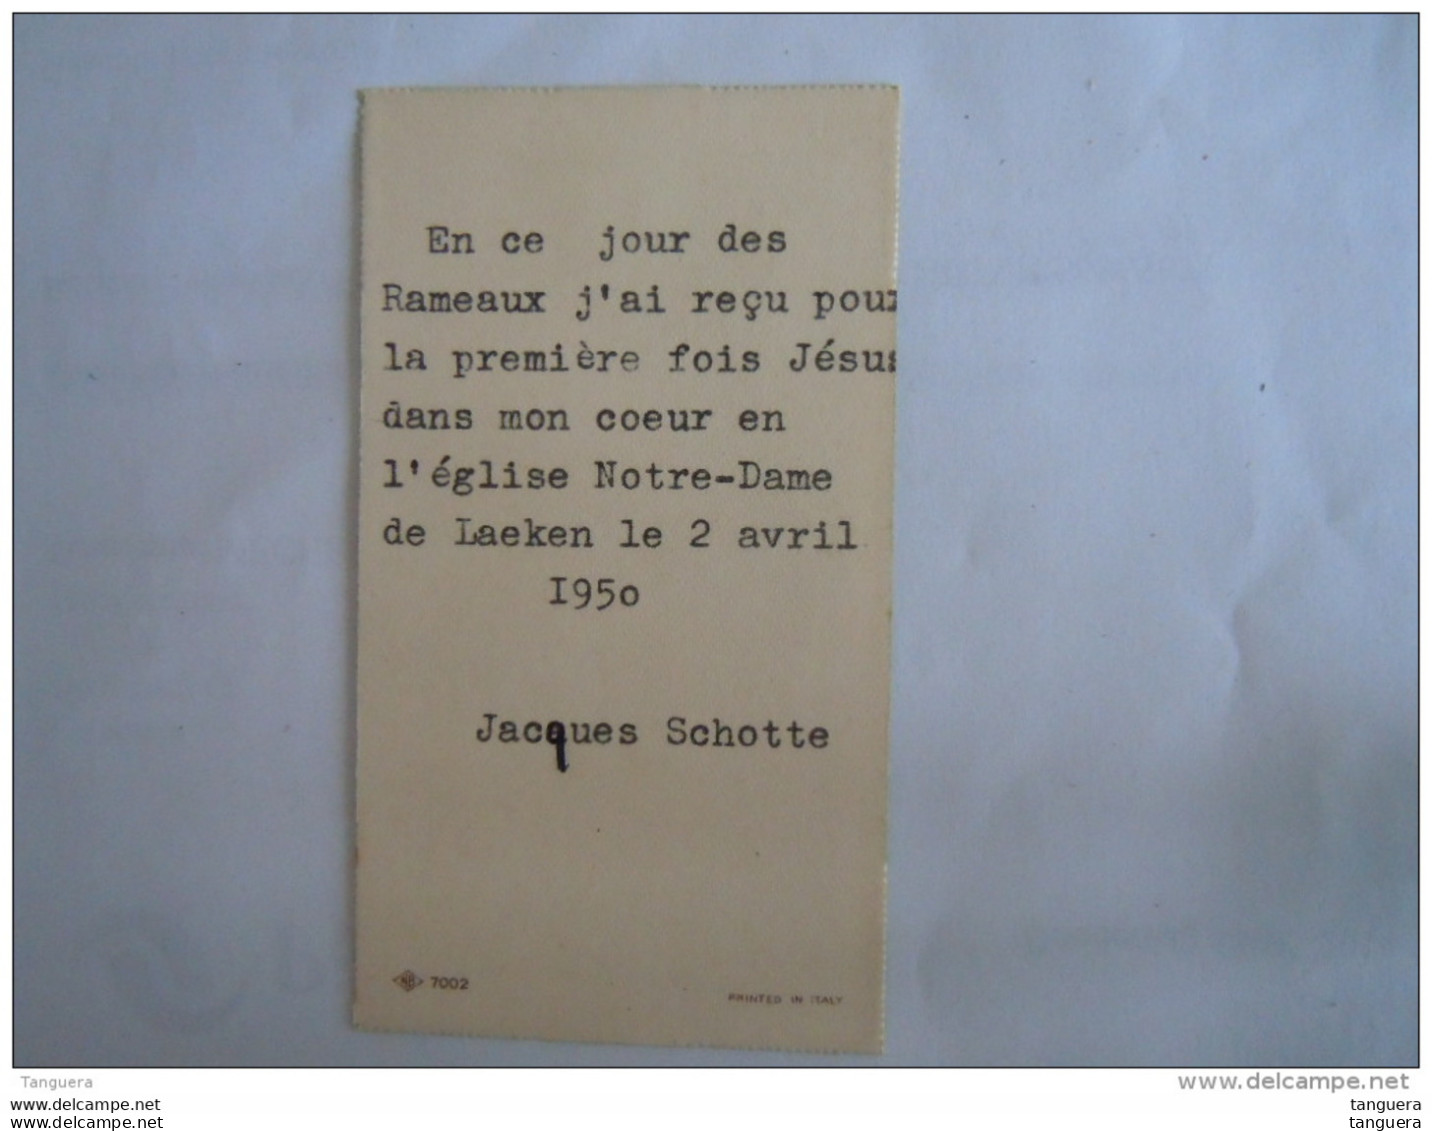 Image Pieuse Holy Card Santini 1950 Communion Jacques Schotte Laeken Engel Ange NB 7002 Italy - Devotieprenten